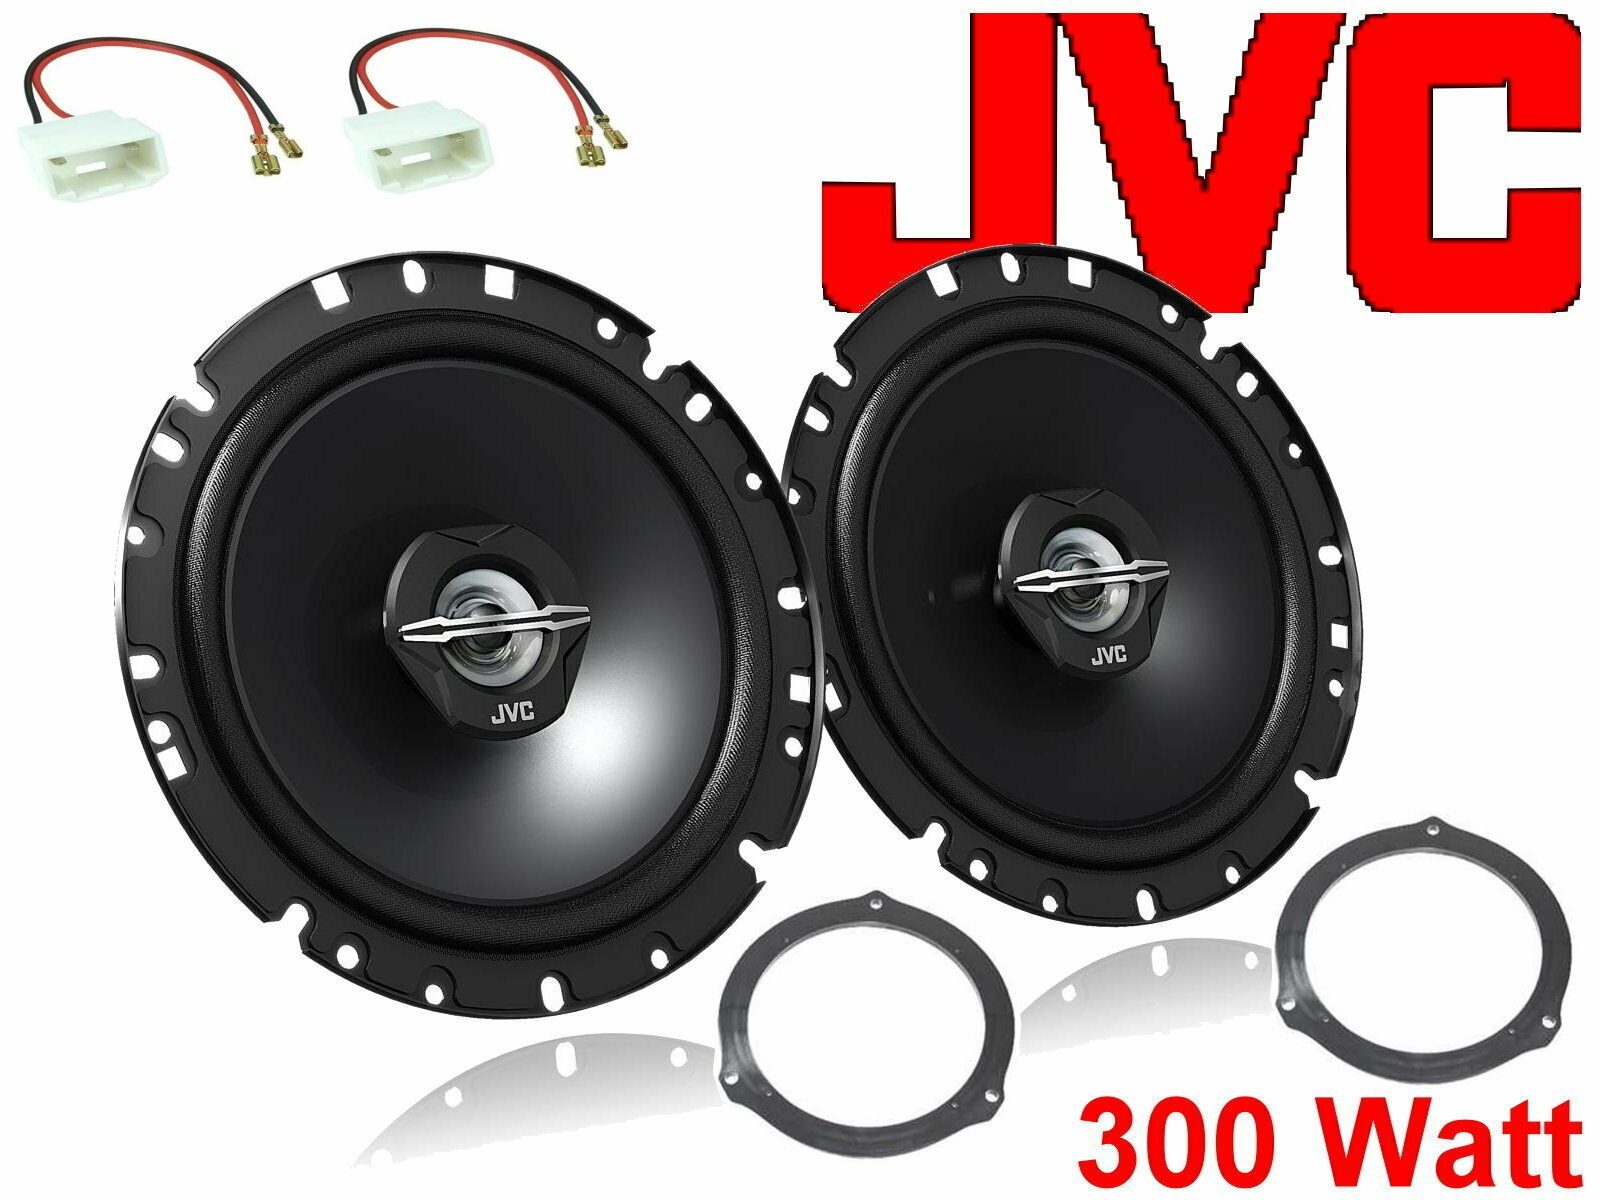 DSX JVC passend für Ford S-Max Bj 05/06 - 2021 Lautspr Auto-Lautsprecher (30 W)